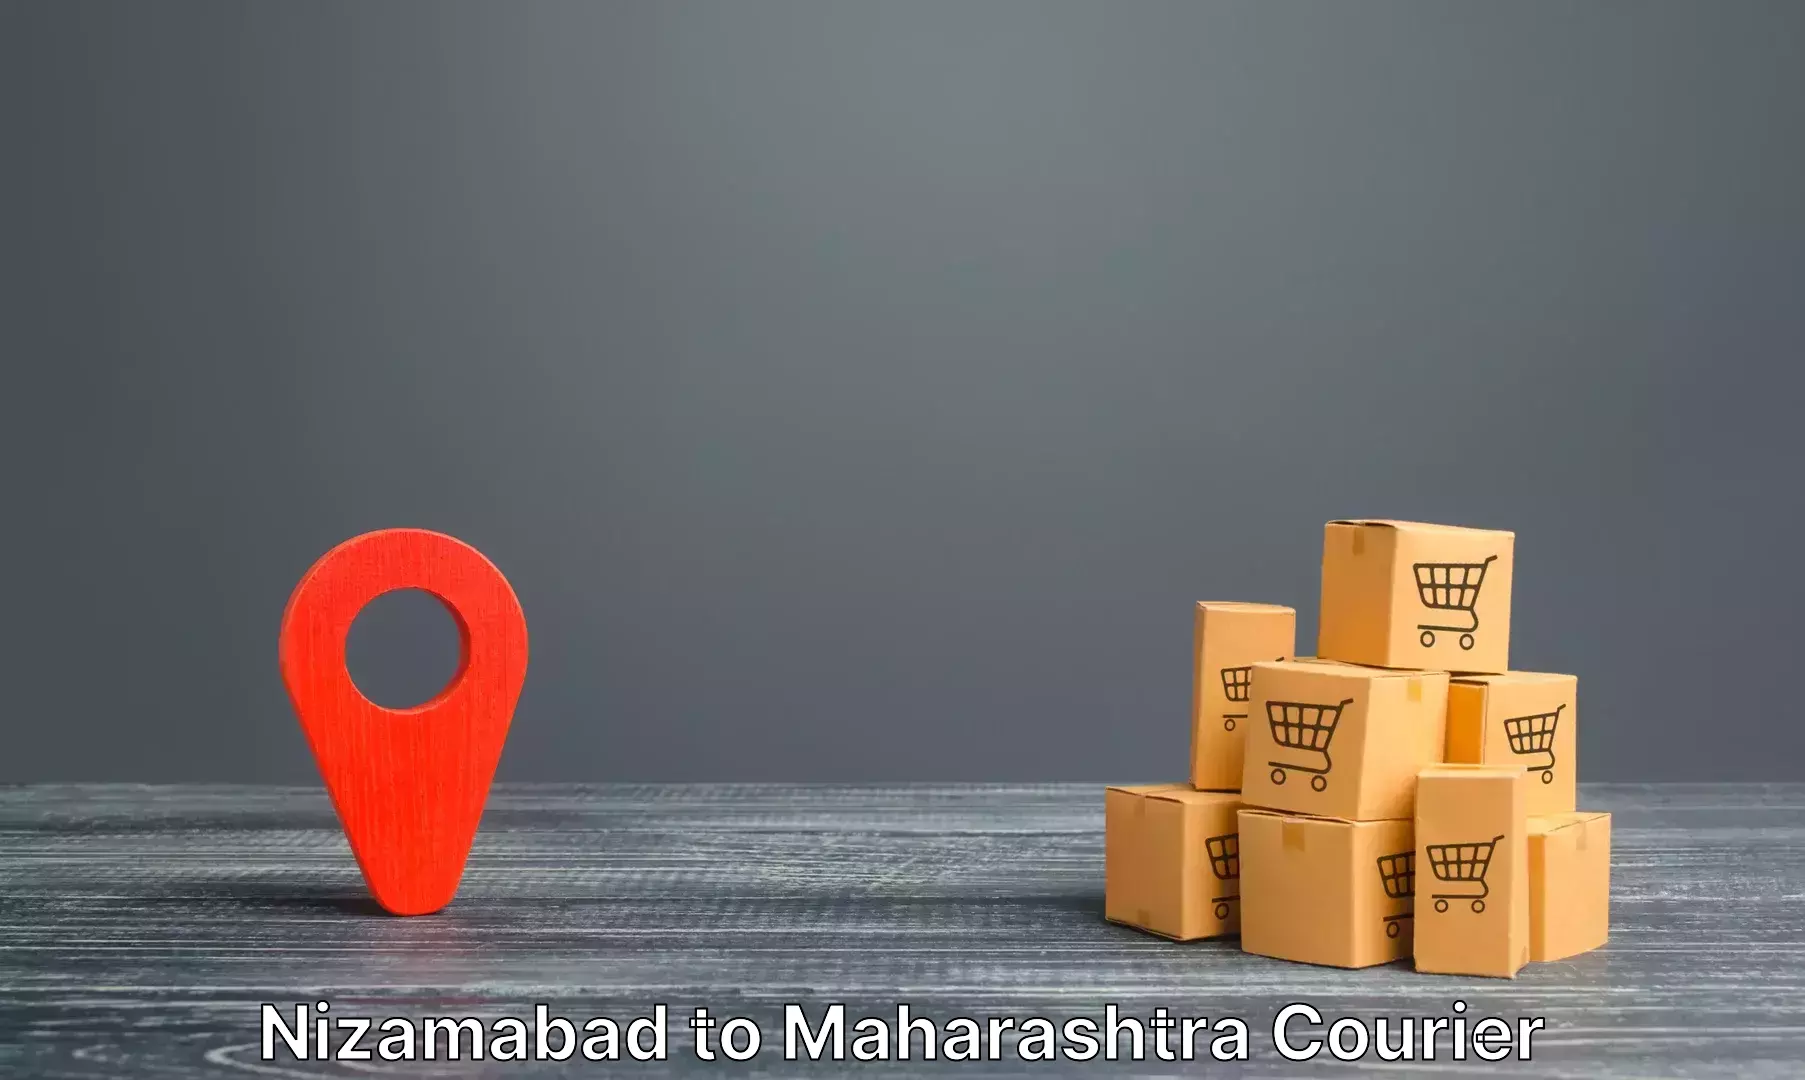 Luggage transport operations in Nizamabad to Maharashtra